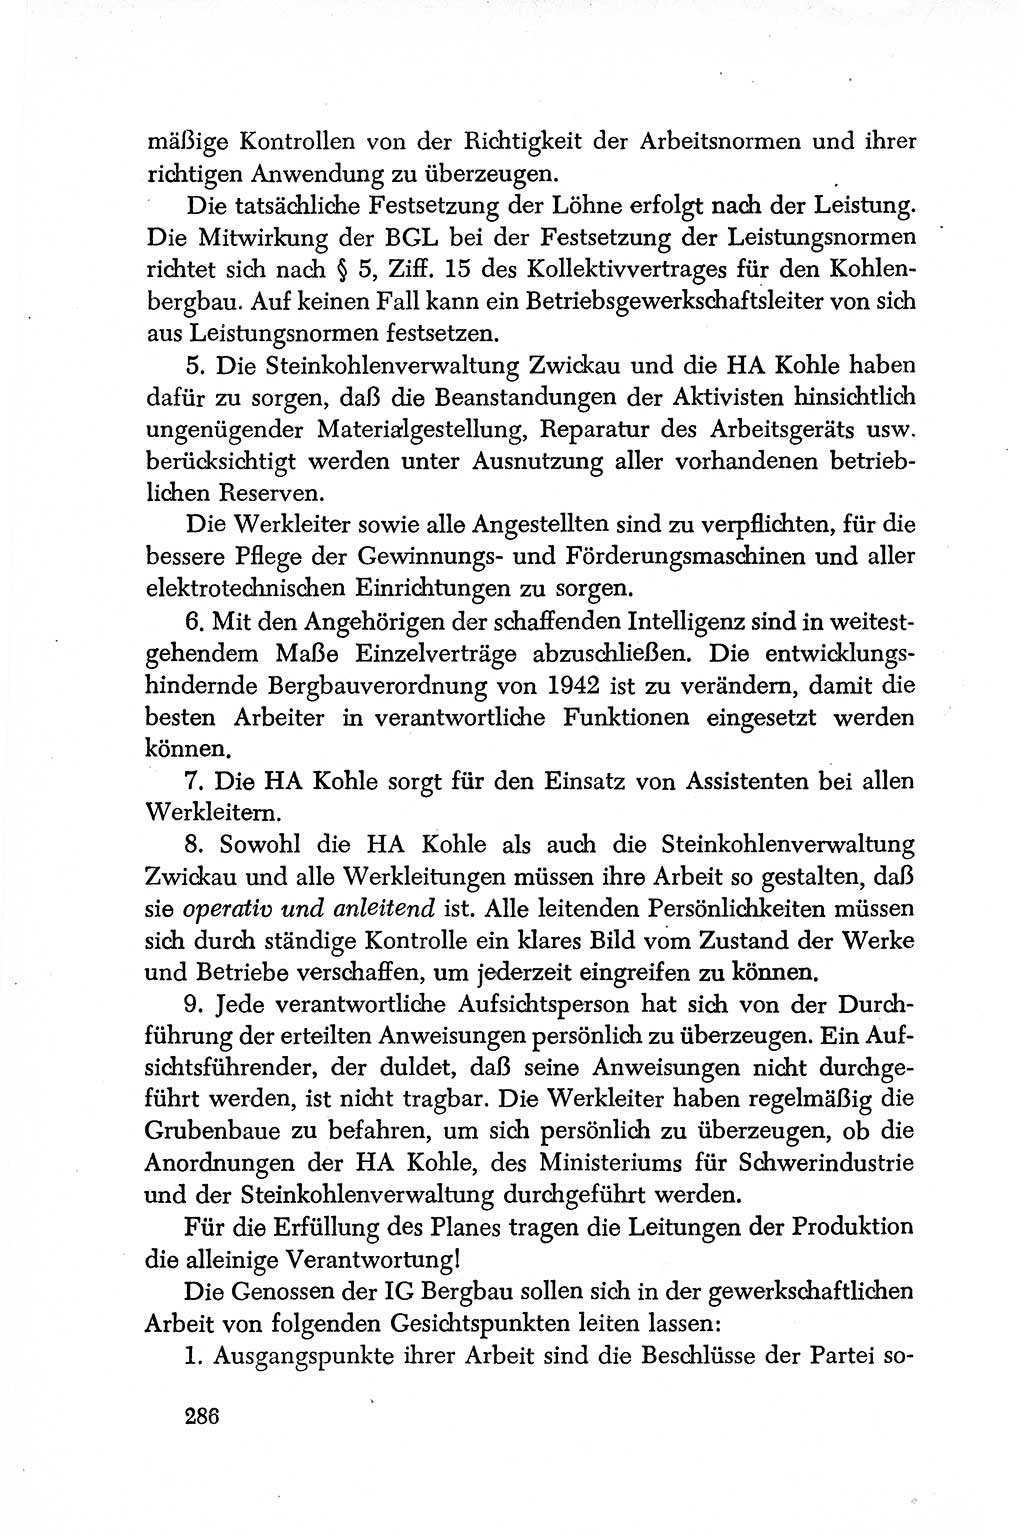 Dokumente der Sozialistischen Einheitspartei Deutschlands (SED) [Deutsche Demokratische Republik (DDR)] 1950-1952, Seite 286 (Dok. SED DDR 1950-1952, S. 286)